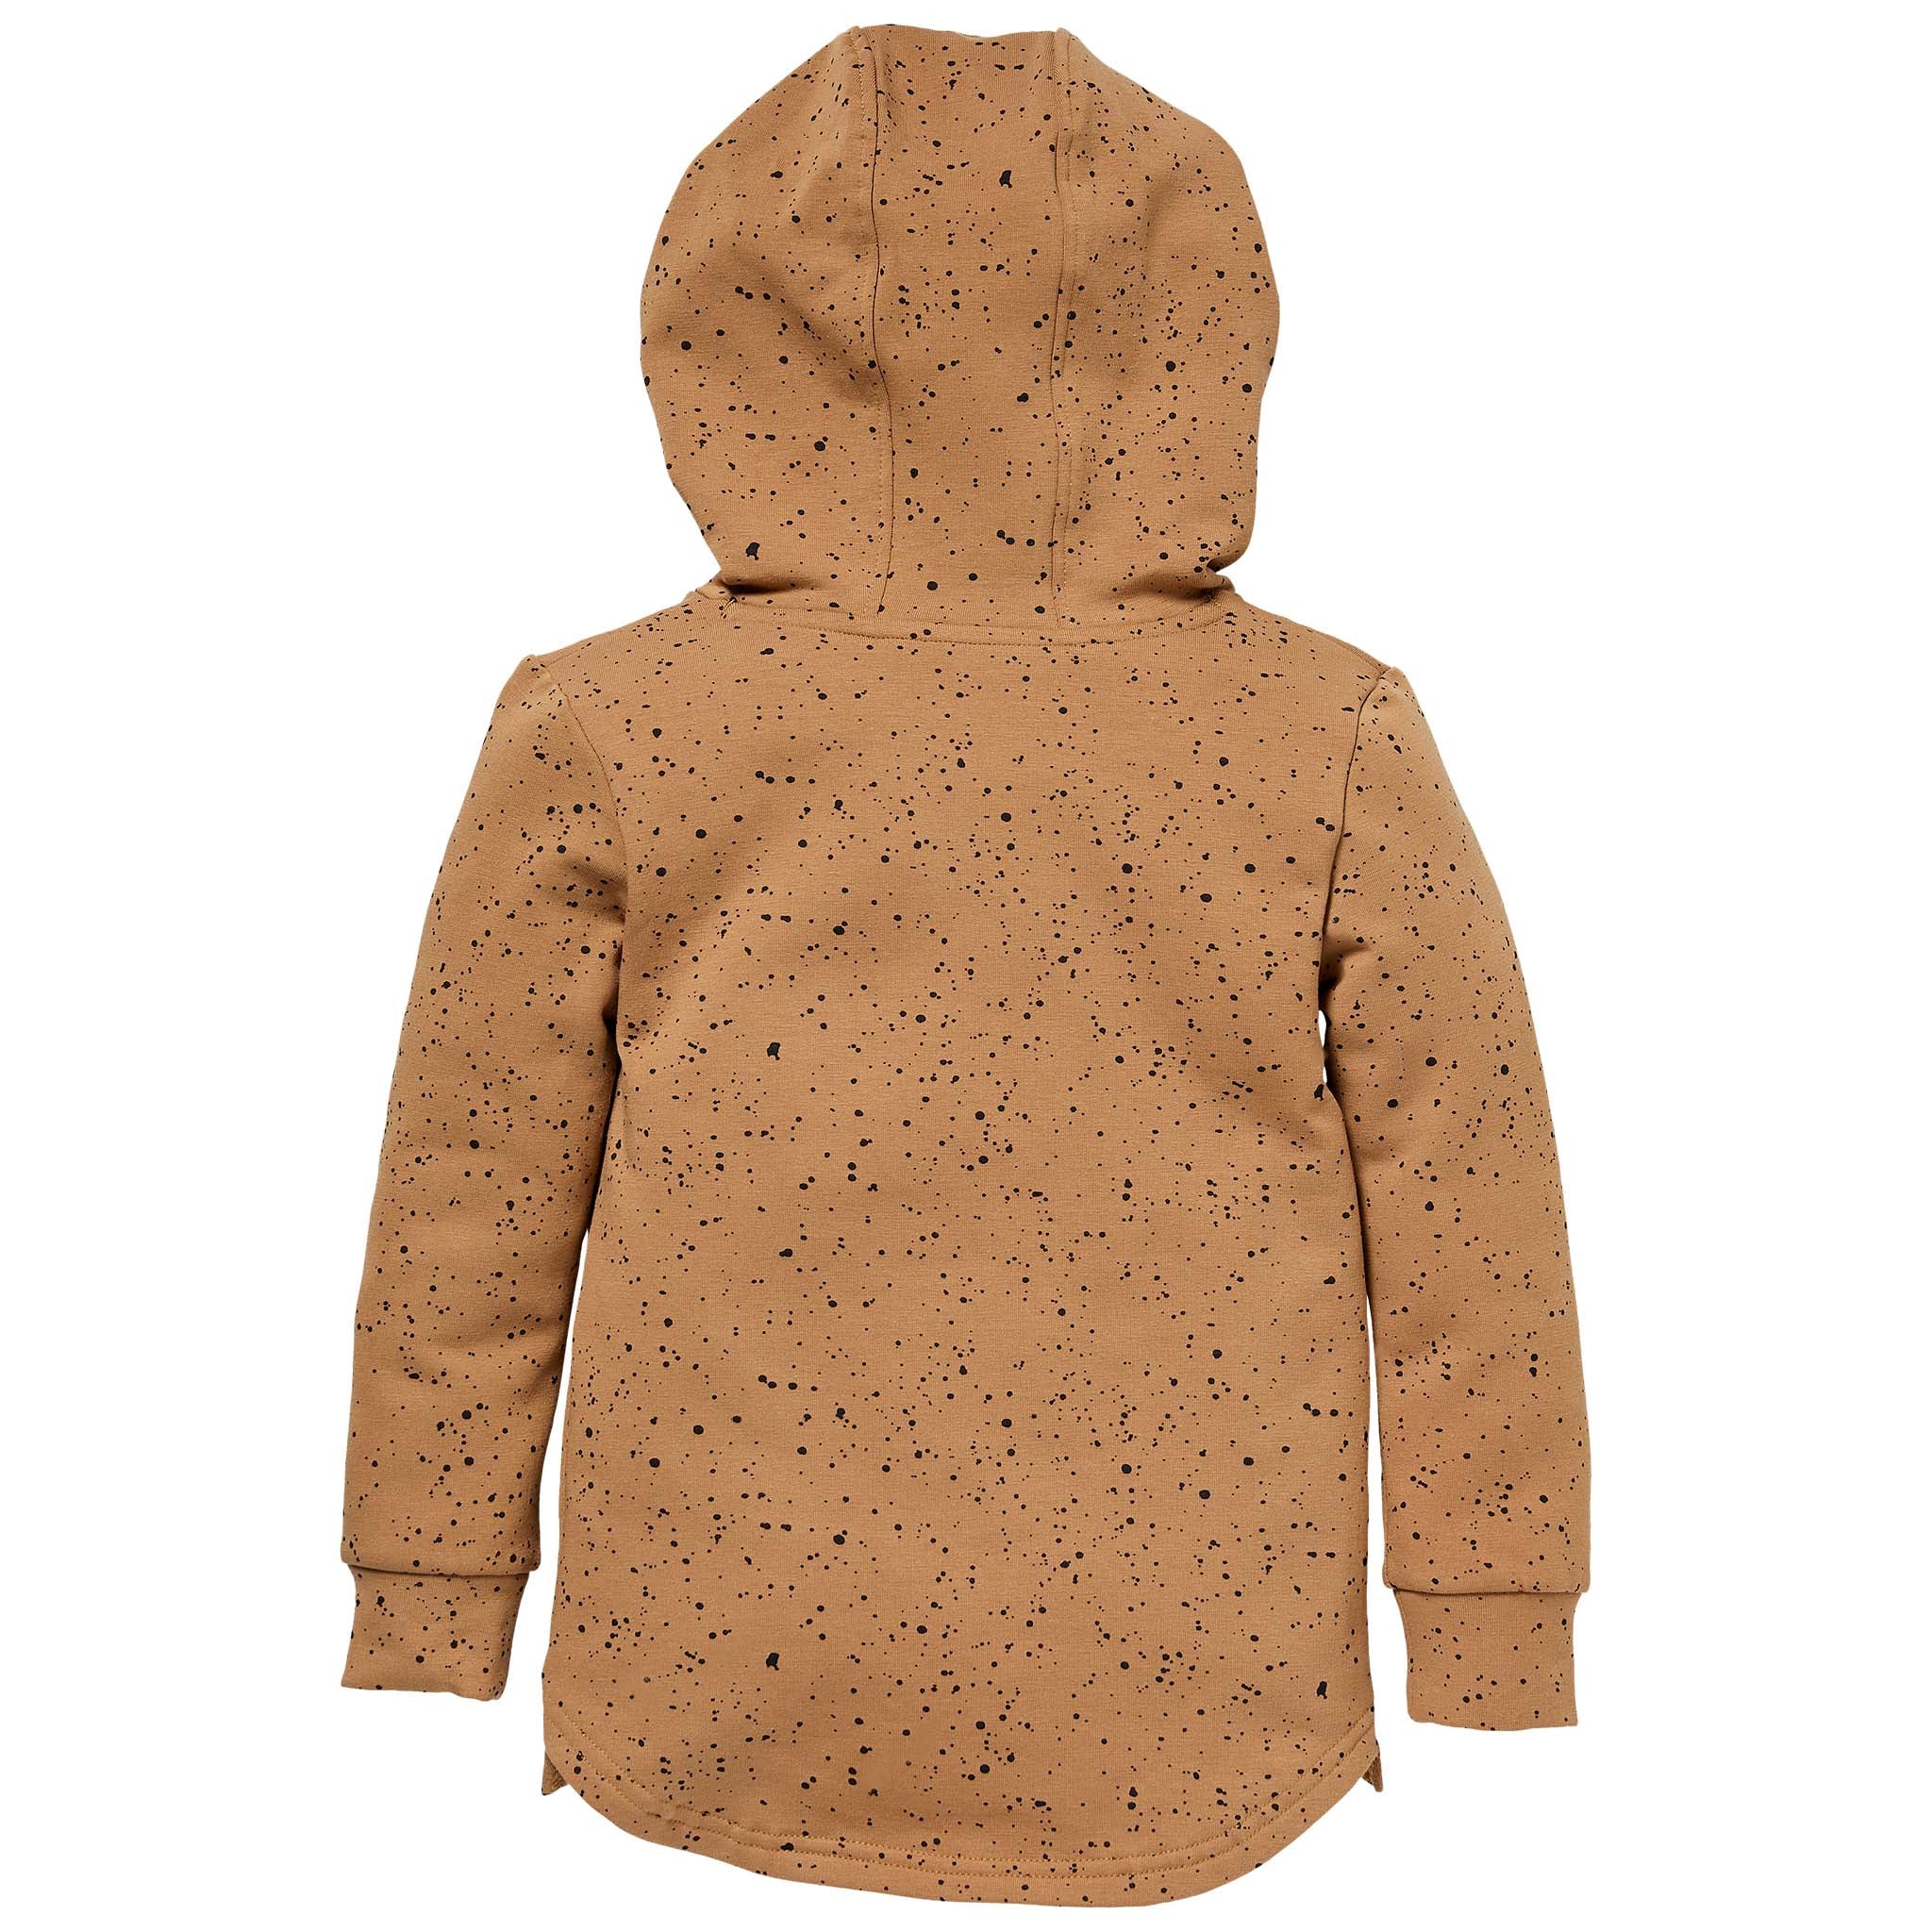 Jongens Sweater SILAS W212 van Little Levv in de kleur AOP Brown Sand Paint in maat 116.